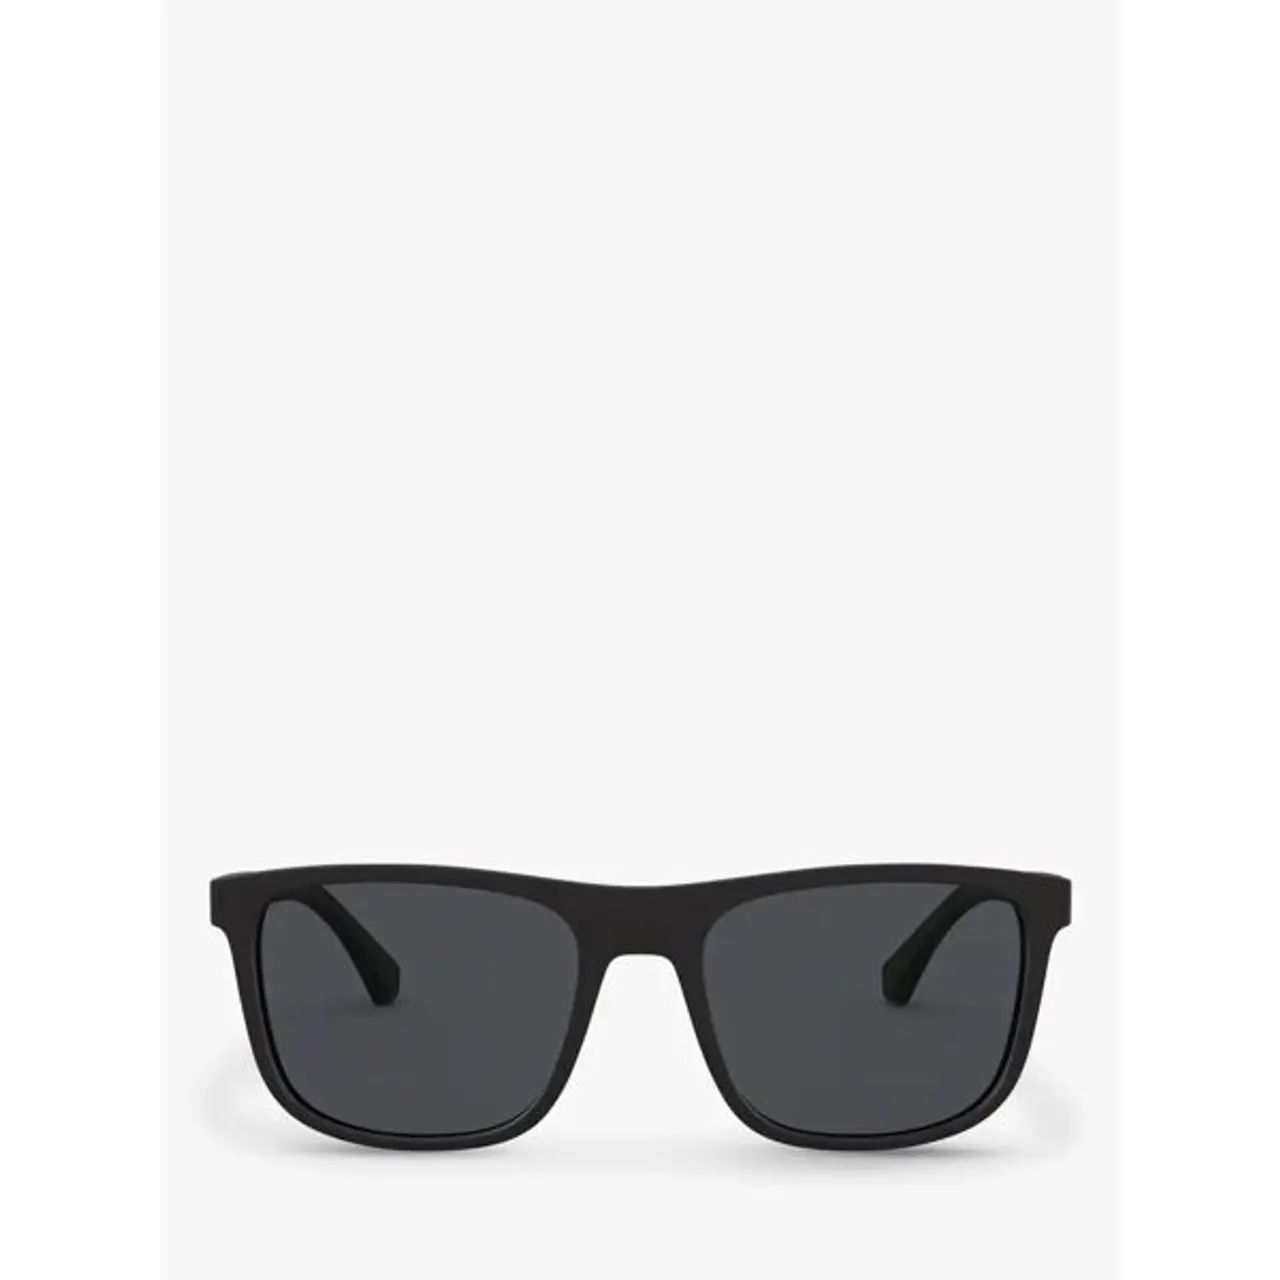 Emporio Armani Men's Square Sunglasses - Matte Black/Grey - Male